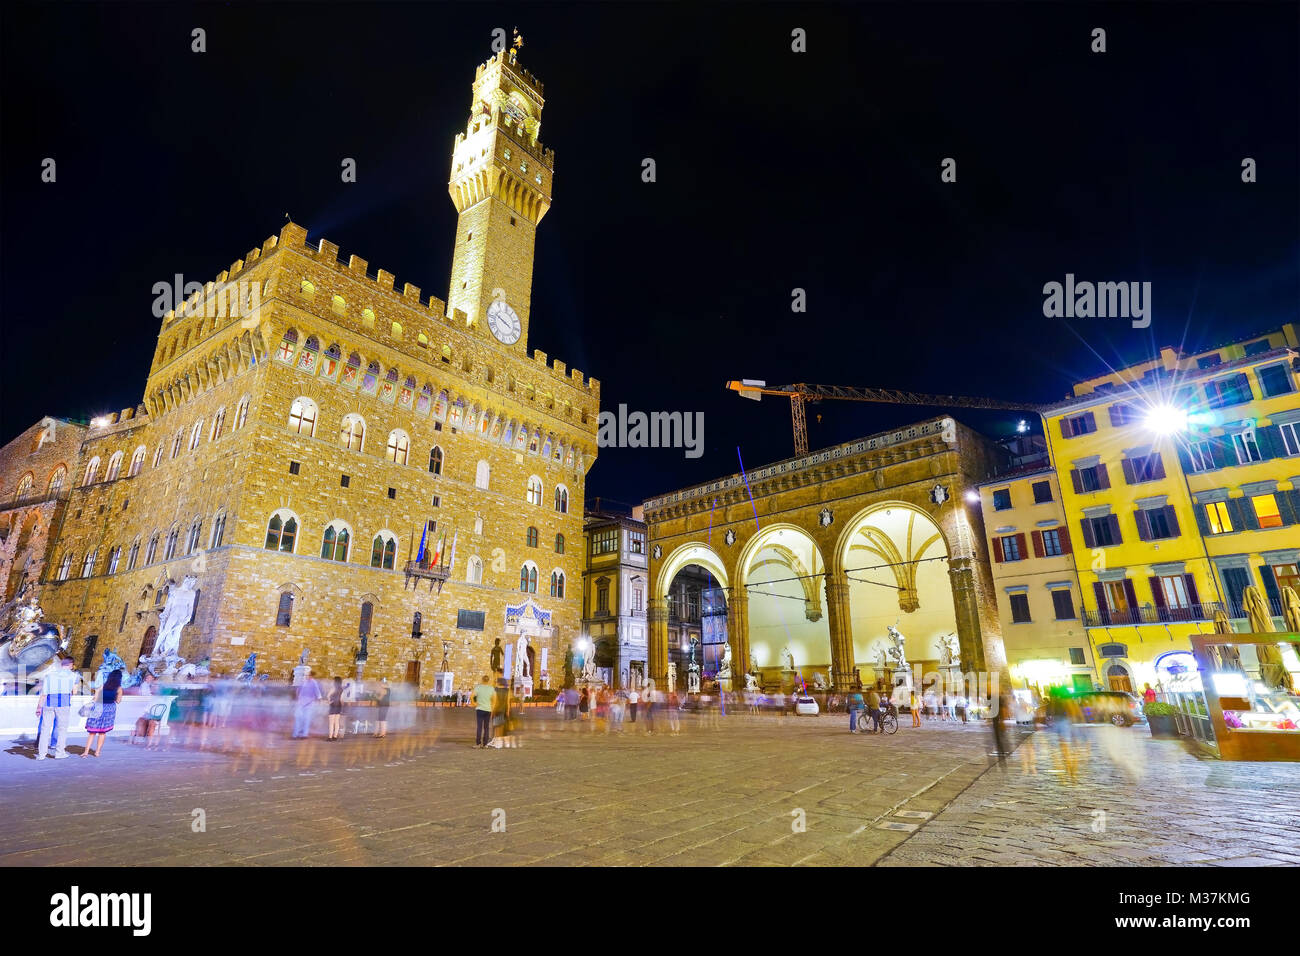 View of the Piazza della Signoria and Palazzo Vecchio in Florence at night. Stock Photo